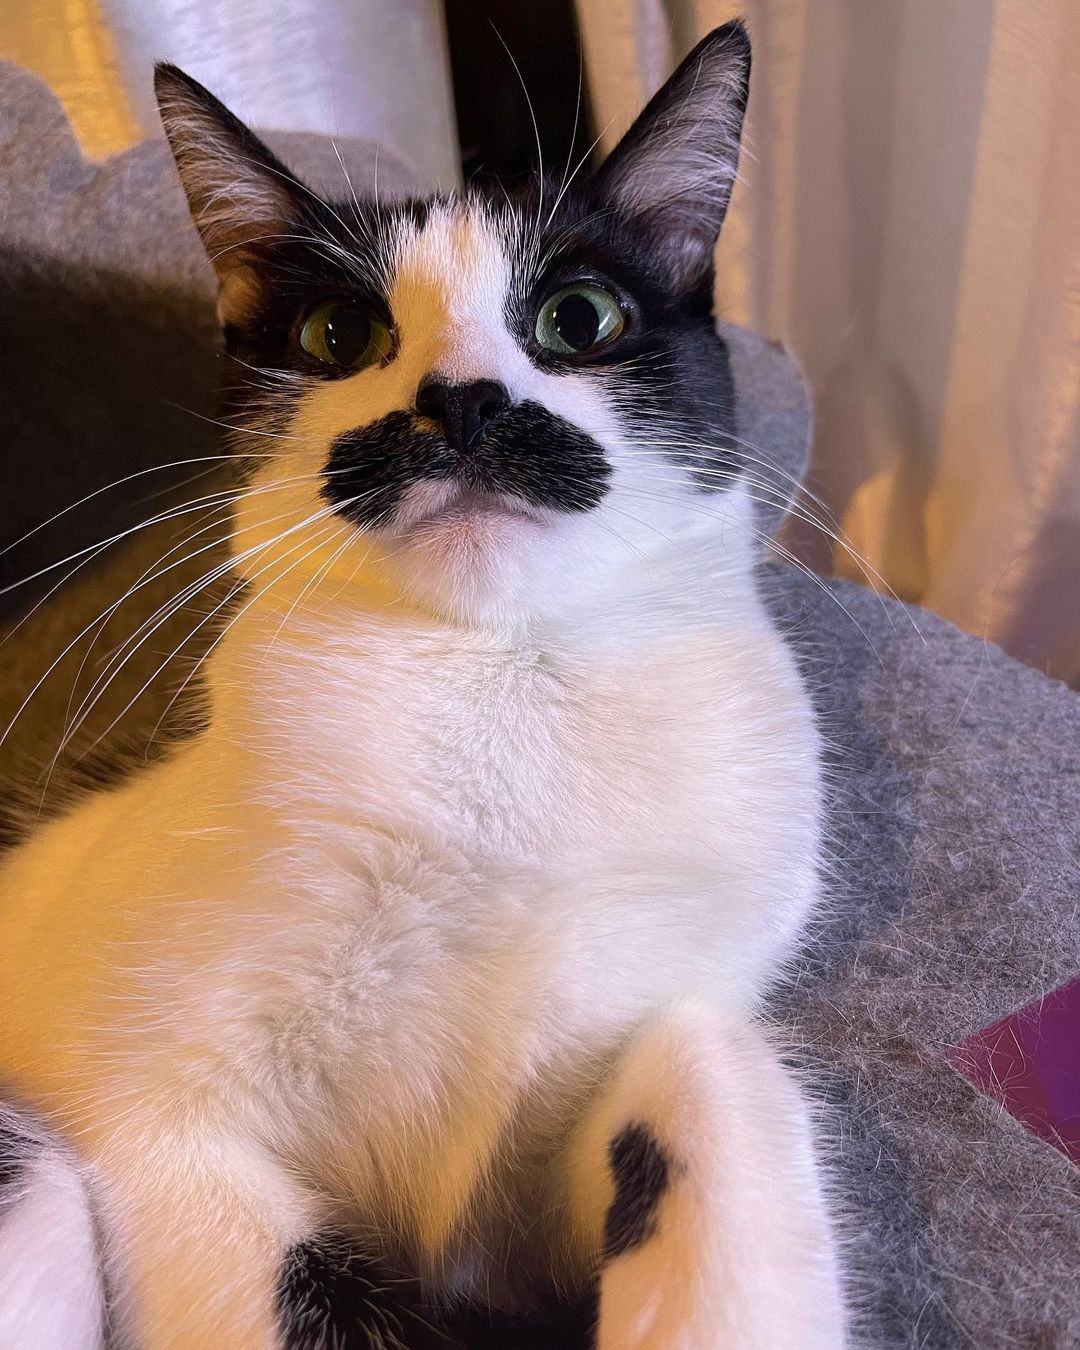 Gato conquista internet após internautas o compararem com Freddie Mercury  (Foto: Reprodução / Instagram)